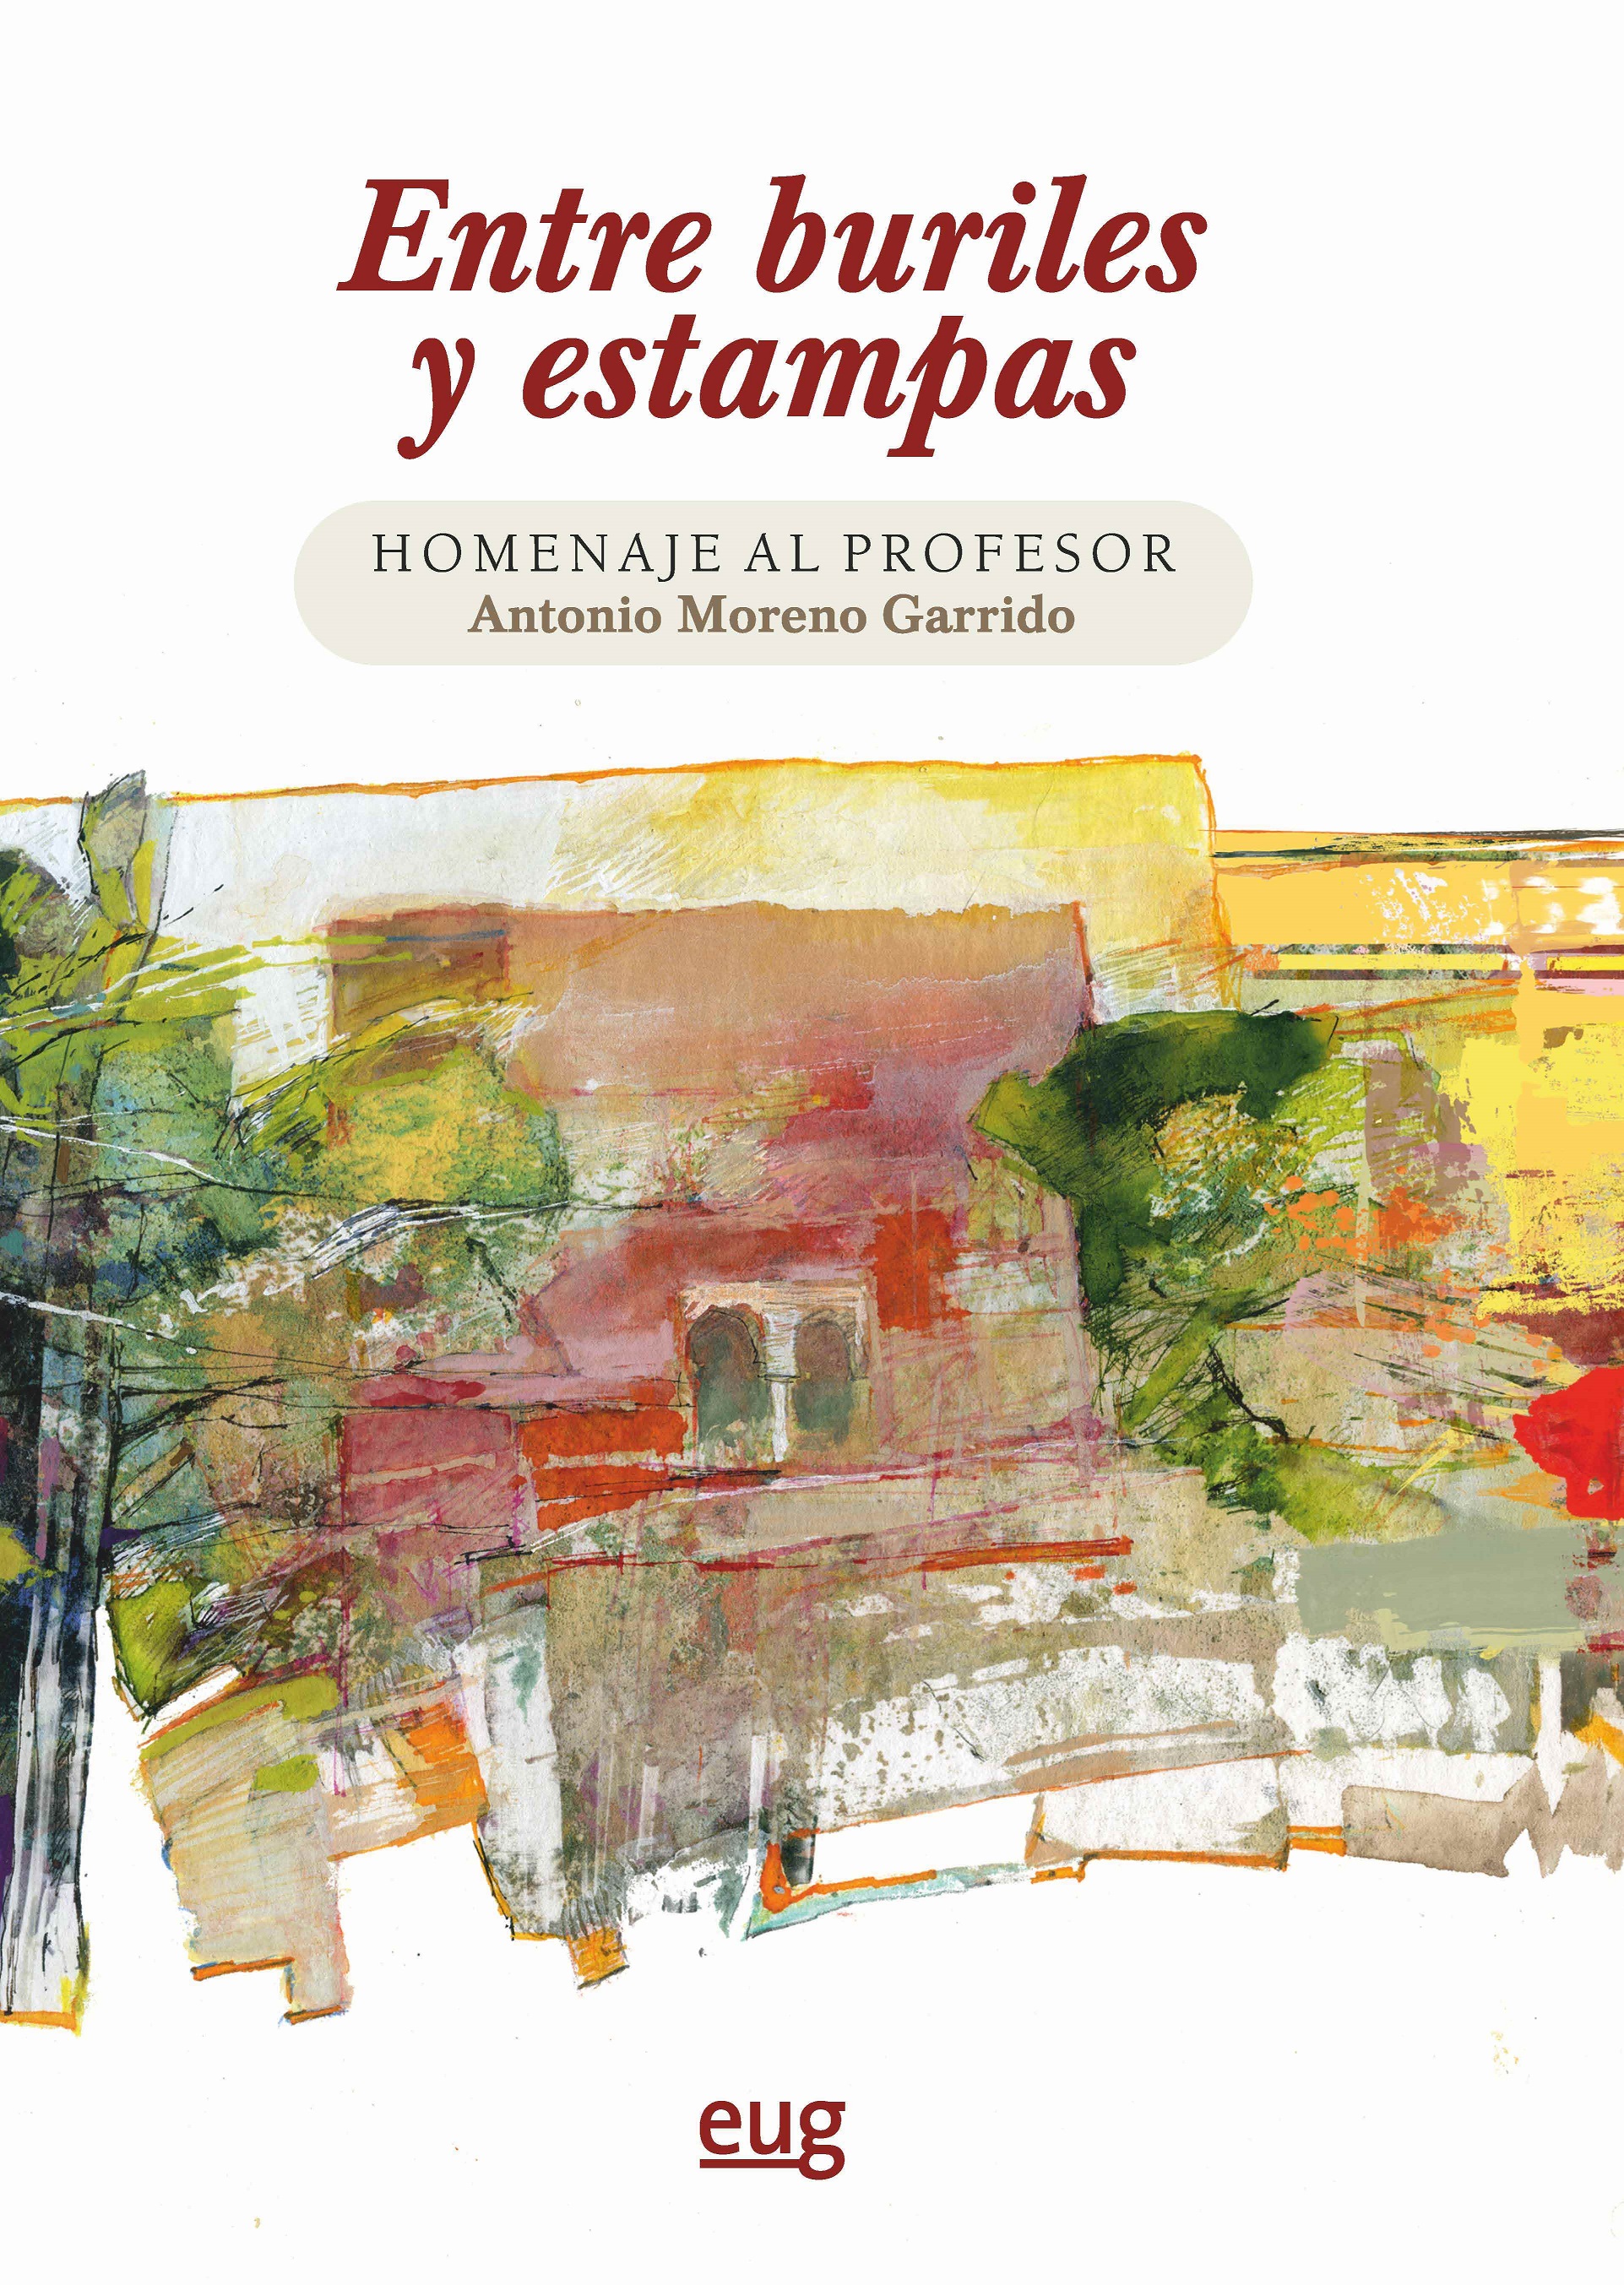 Imagen de portada del libro Entre buriles y estampas